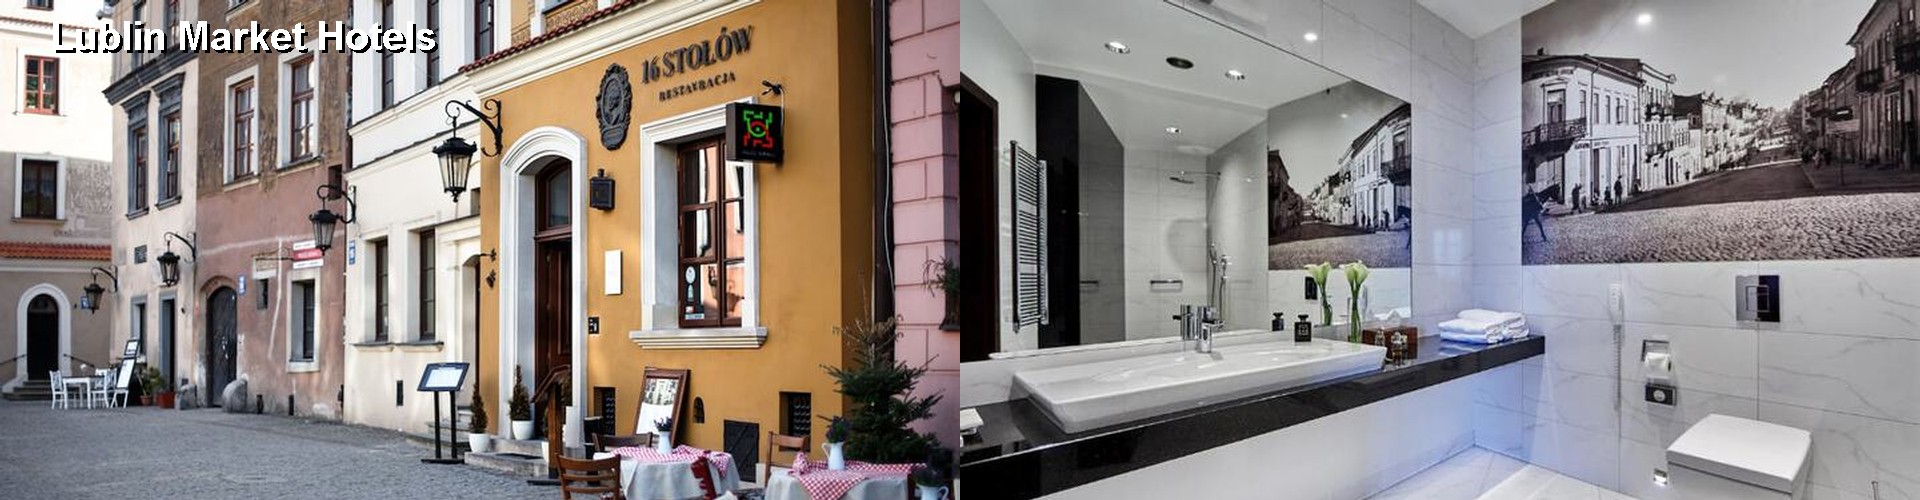 2 Best Hotels near Lublin Market